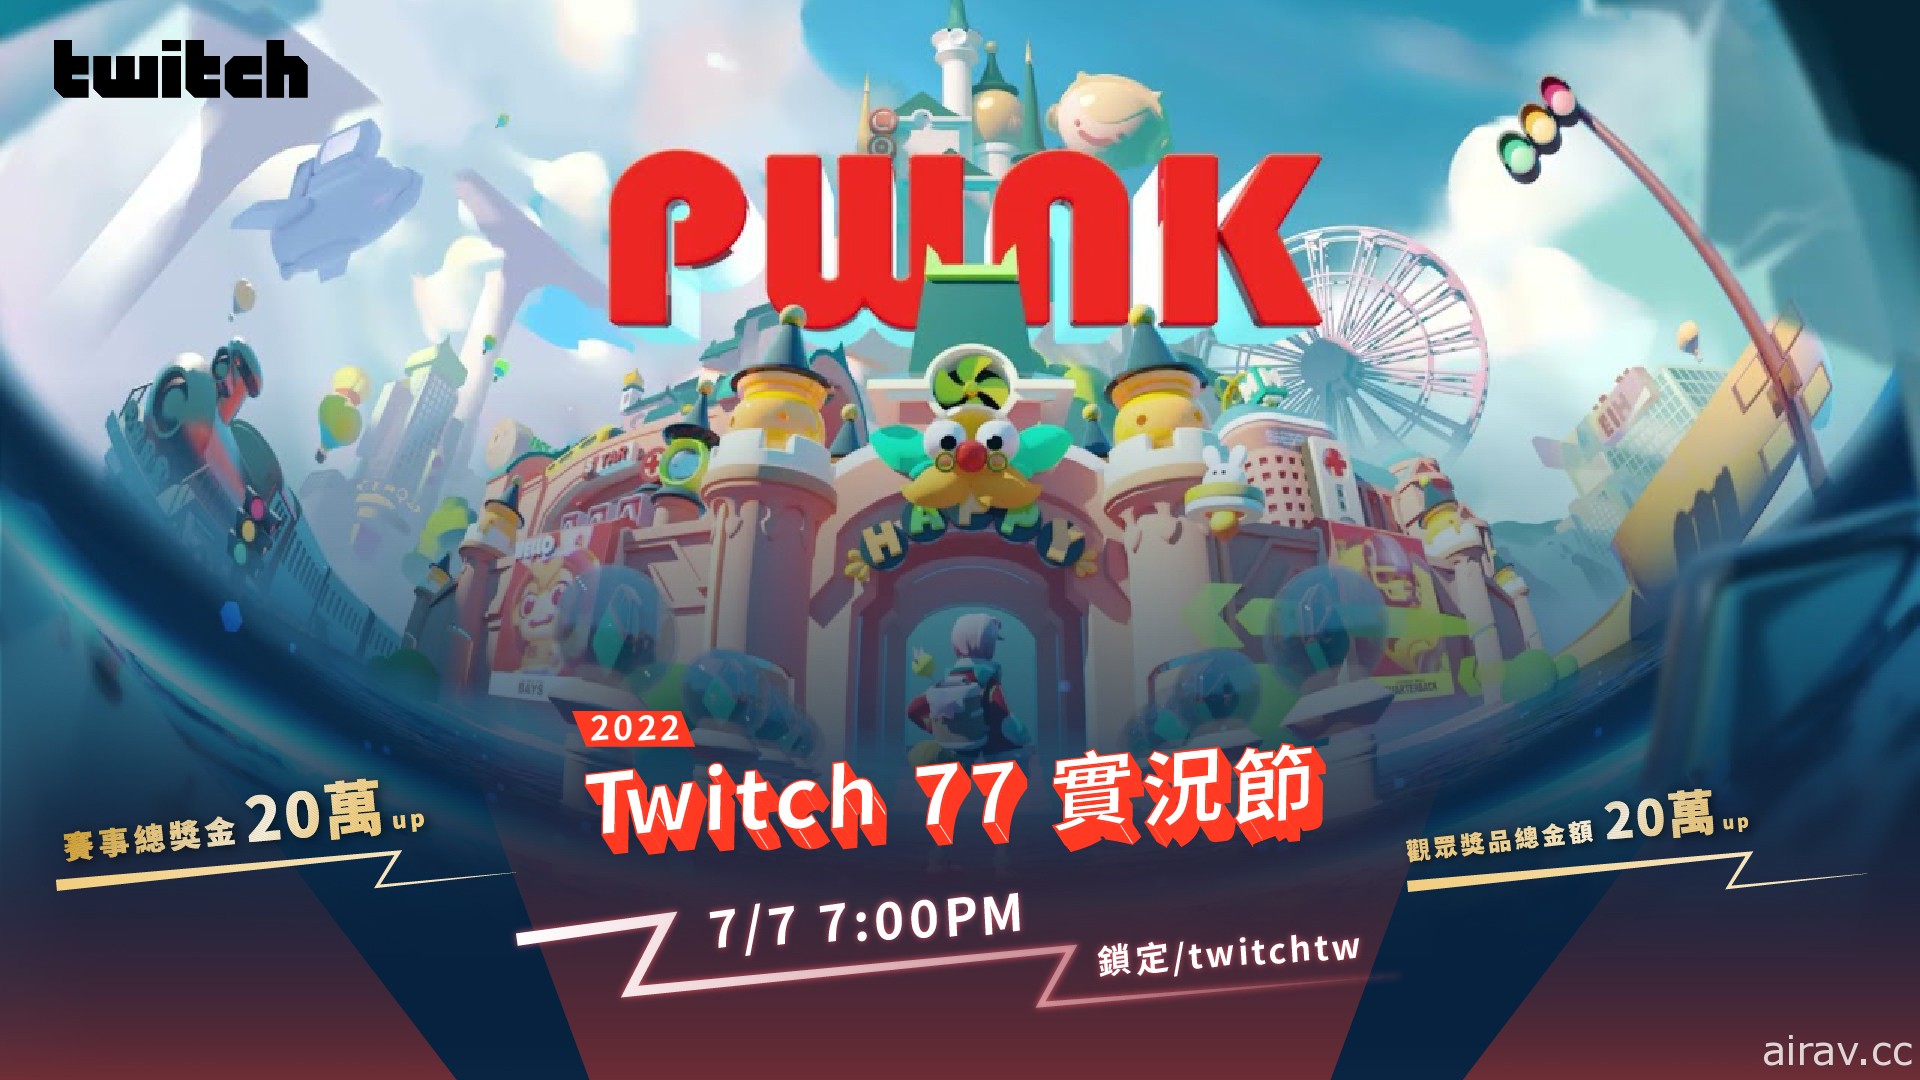 Twitch「77 實況節」實況主觀眾將首次組隊在互動遊戲《Pwnk》競逐獎金